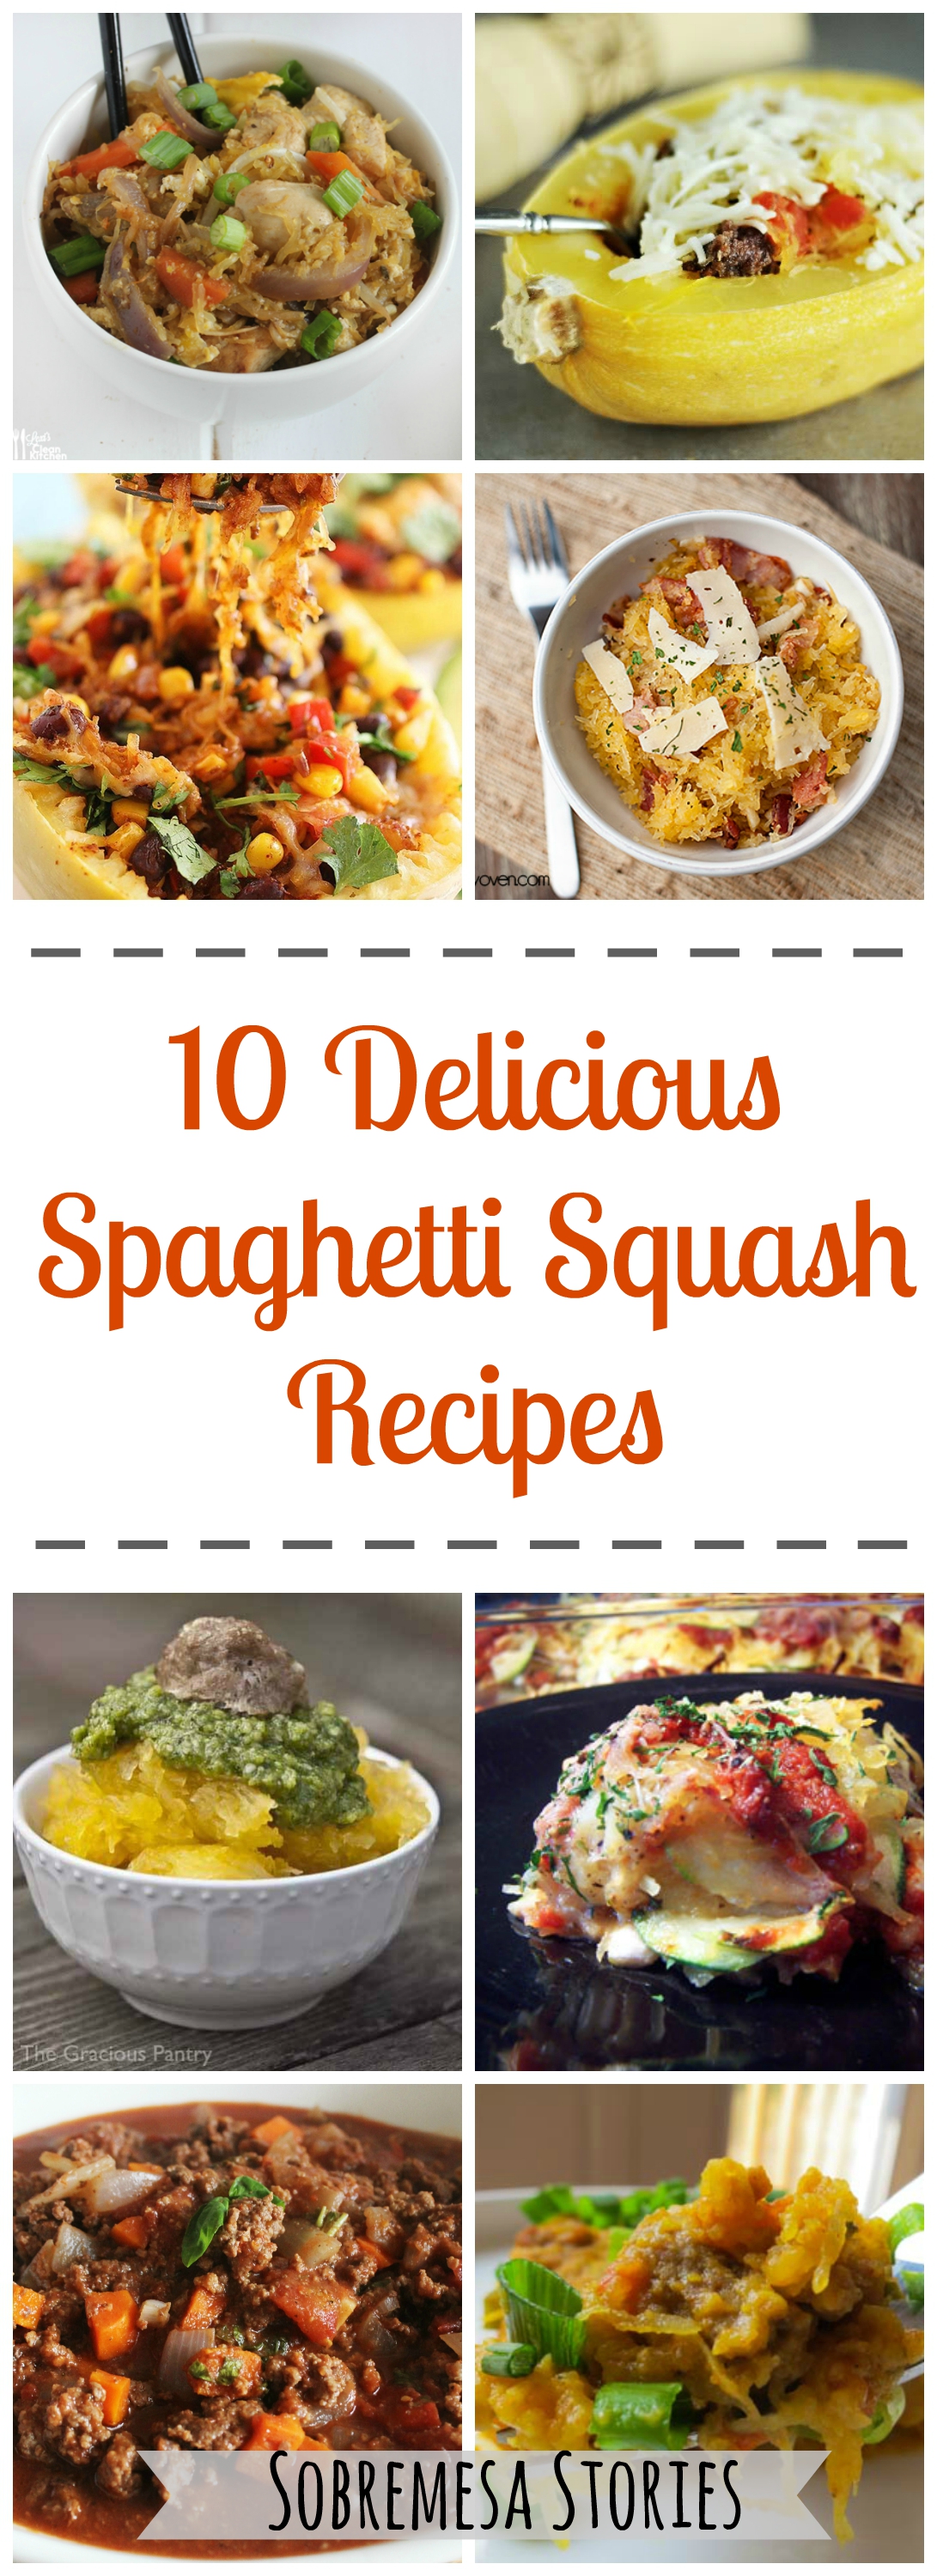 Delicious Spaghetti Squash Recipes Sobremesa Stories